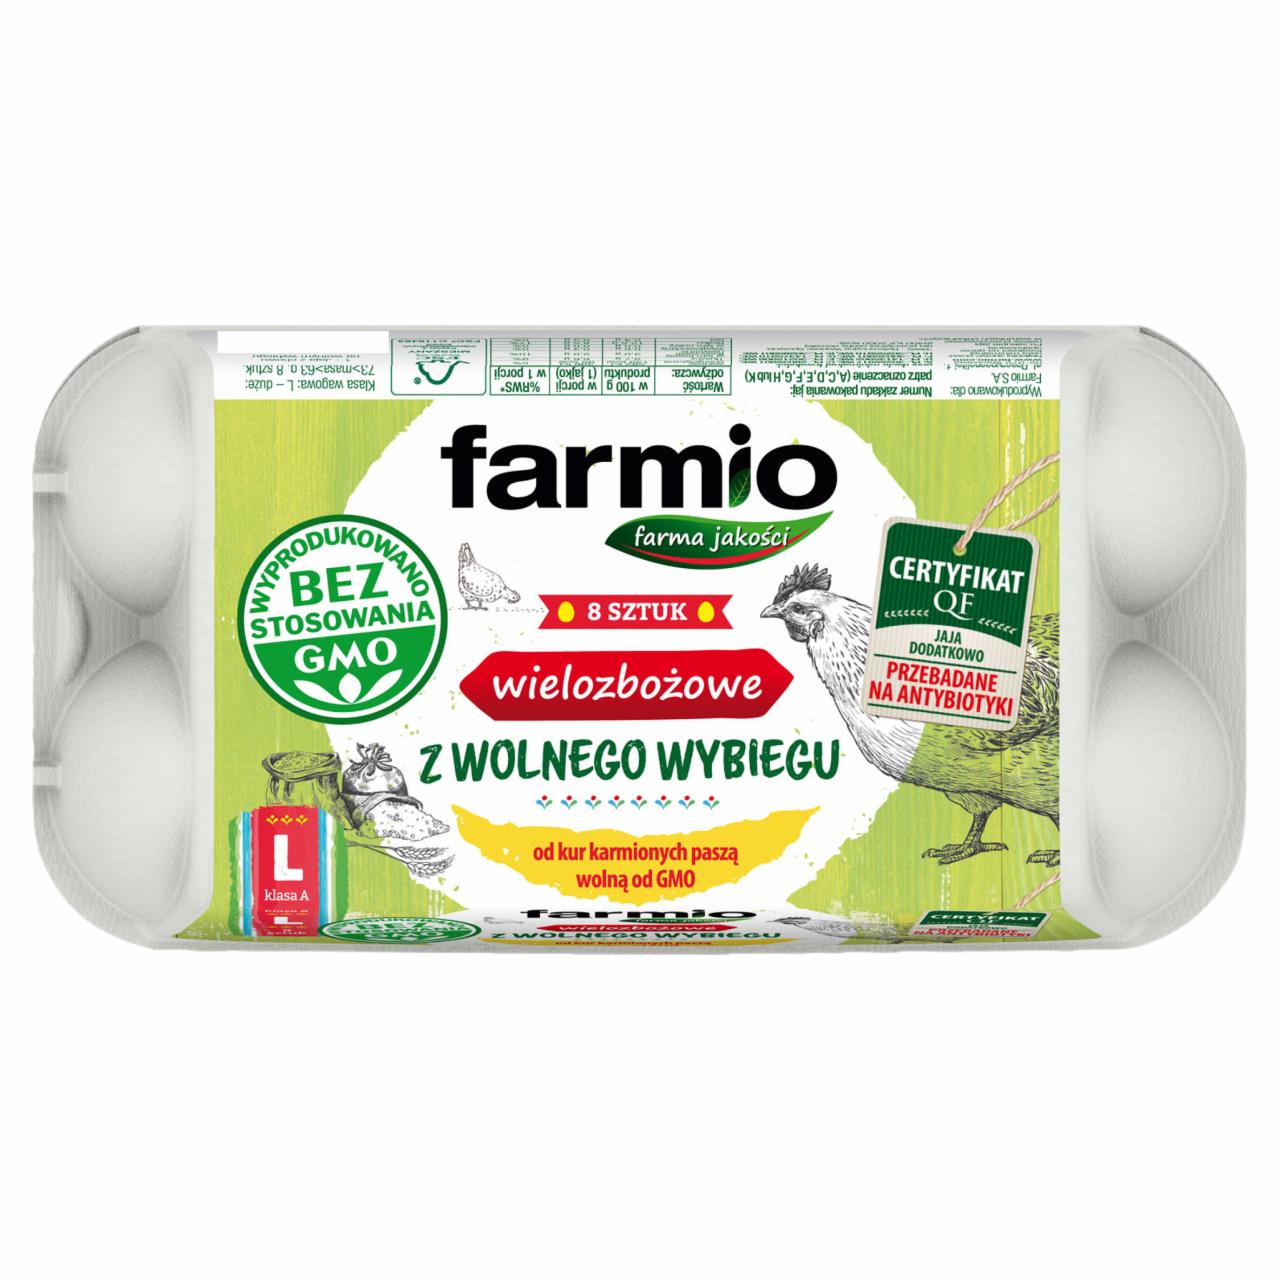 Zdjęcia - Farmio Jaja wielozbożowe z wolnego wybiegu od kur karmionych paszą wolną od GMO L 8 sztuk